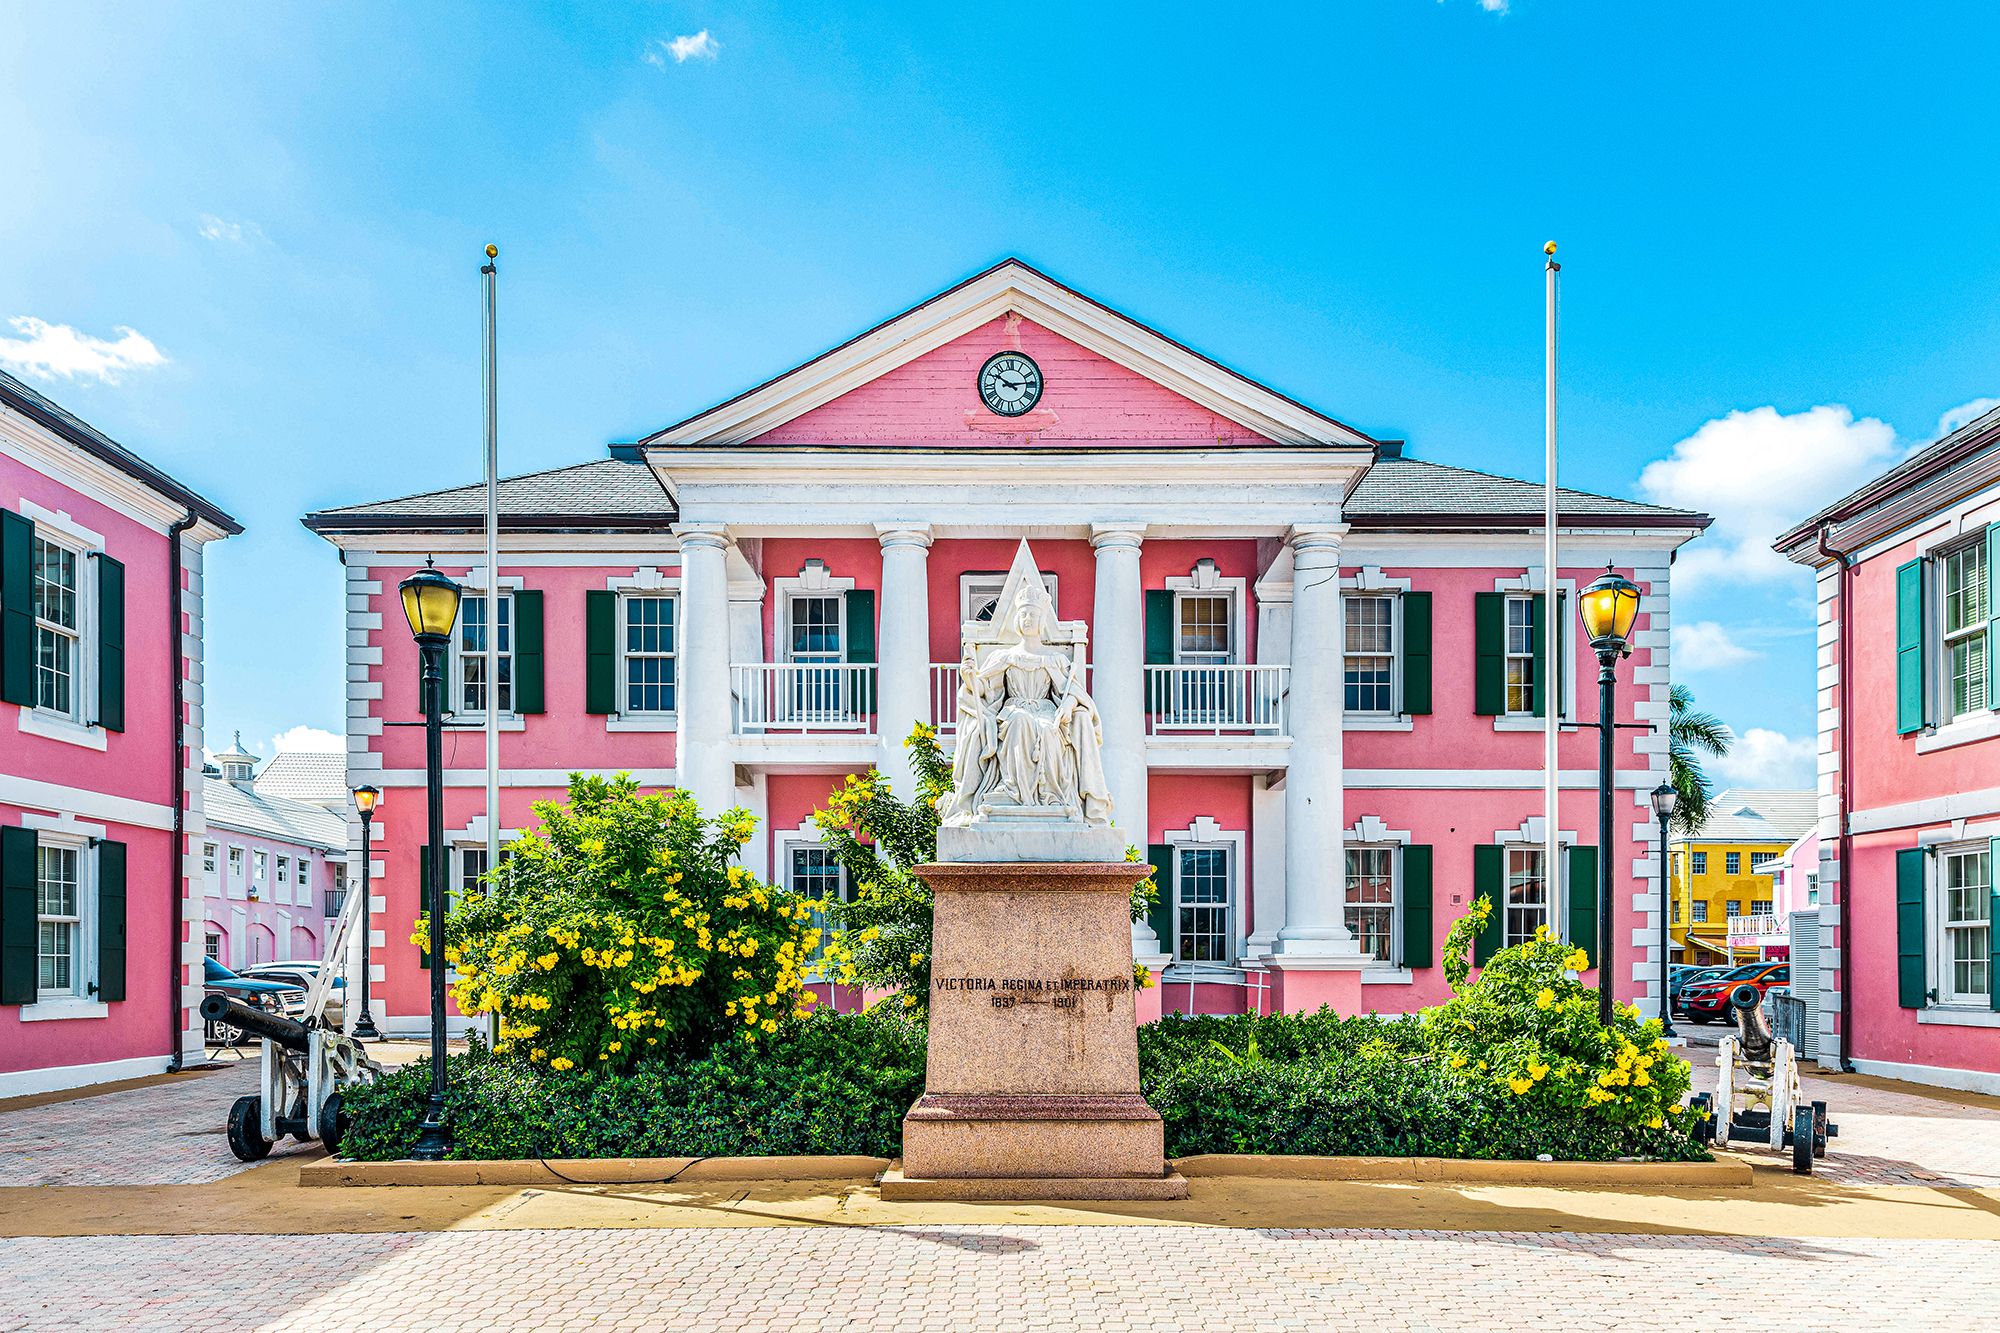 Nassau Bahamas Center Plaza